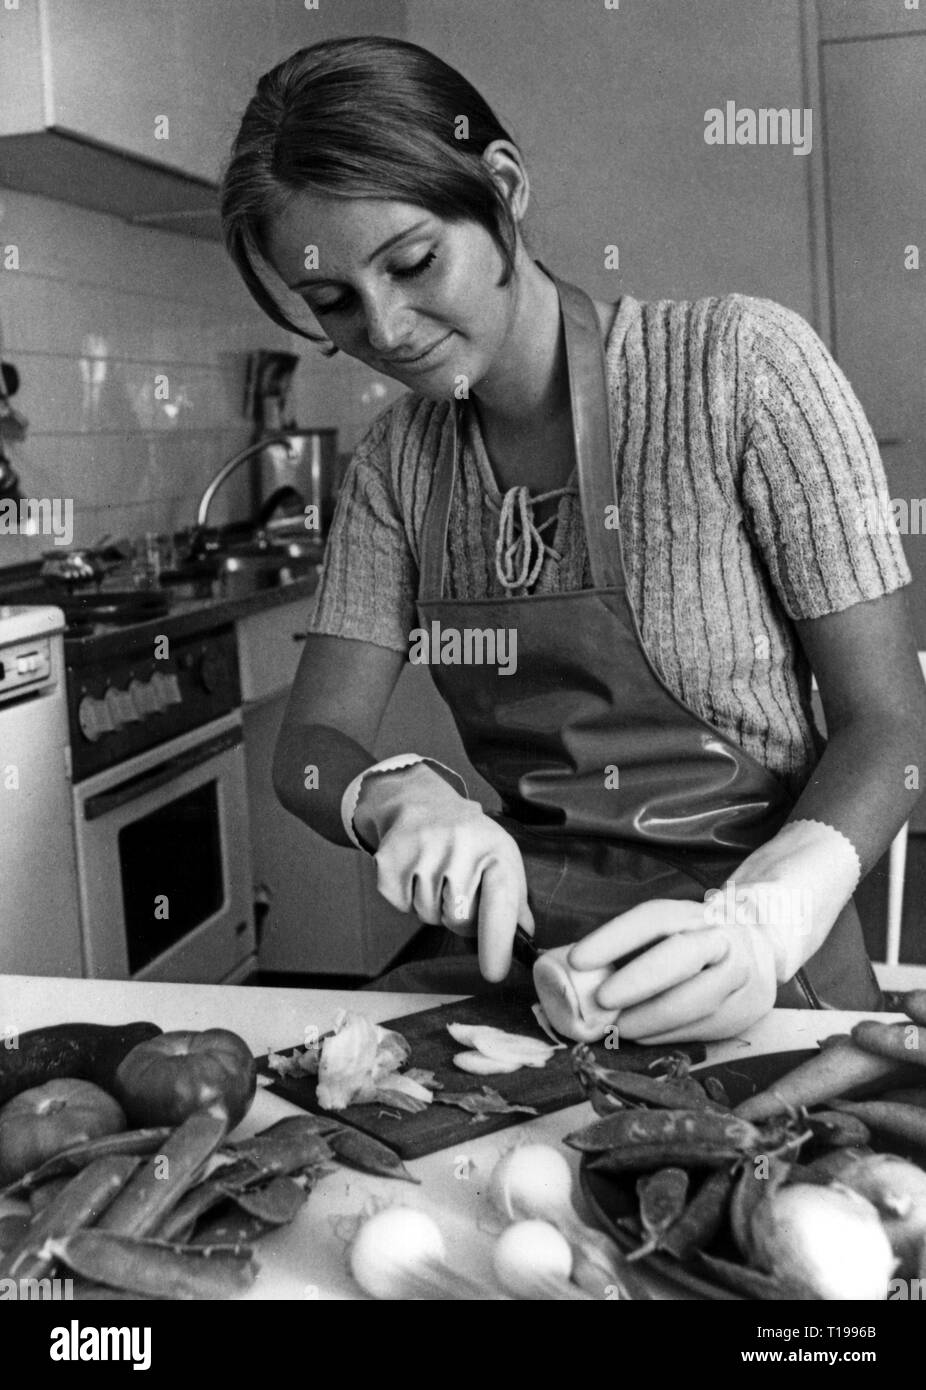 Hogar, cocinar y hornear, joven cortando vegetal con guantes de goma por 'Mapa', circa 1970, Additional-Rights-Clearance-Info-Not-Available Foto de stock